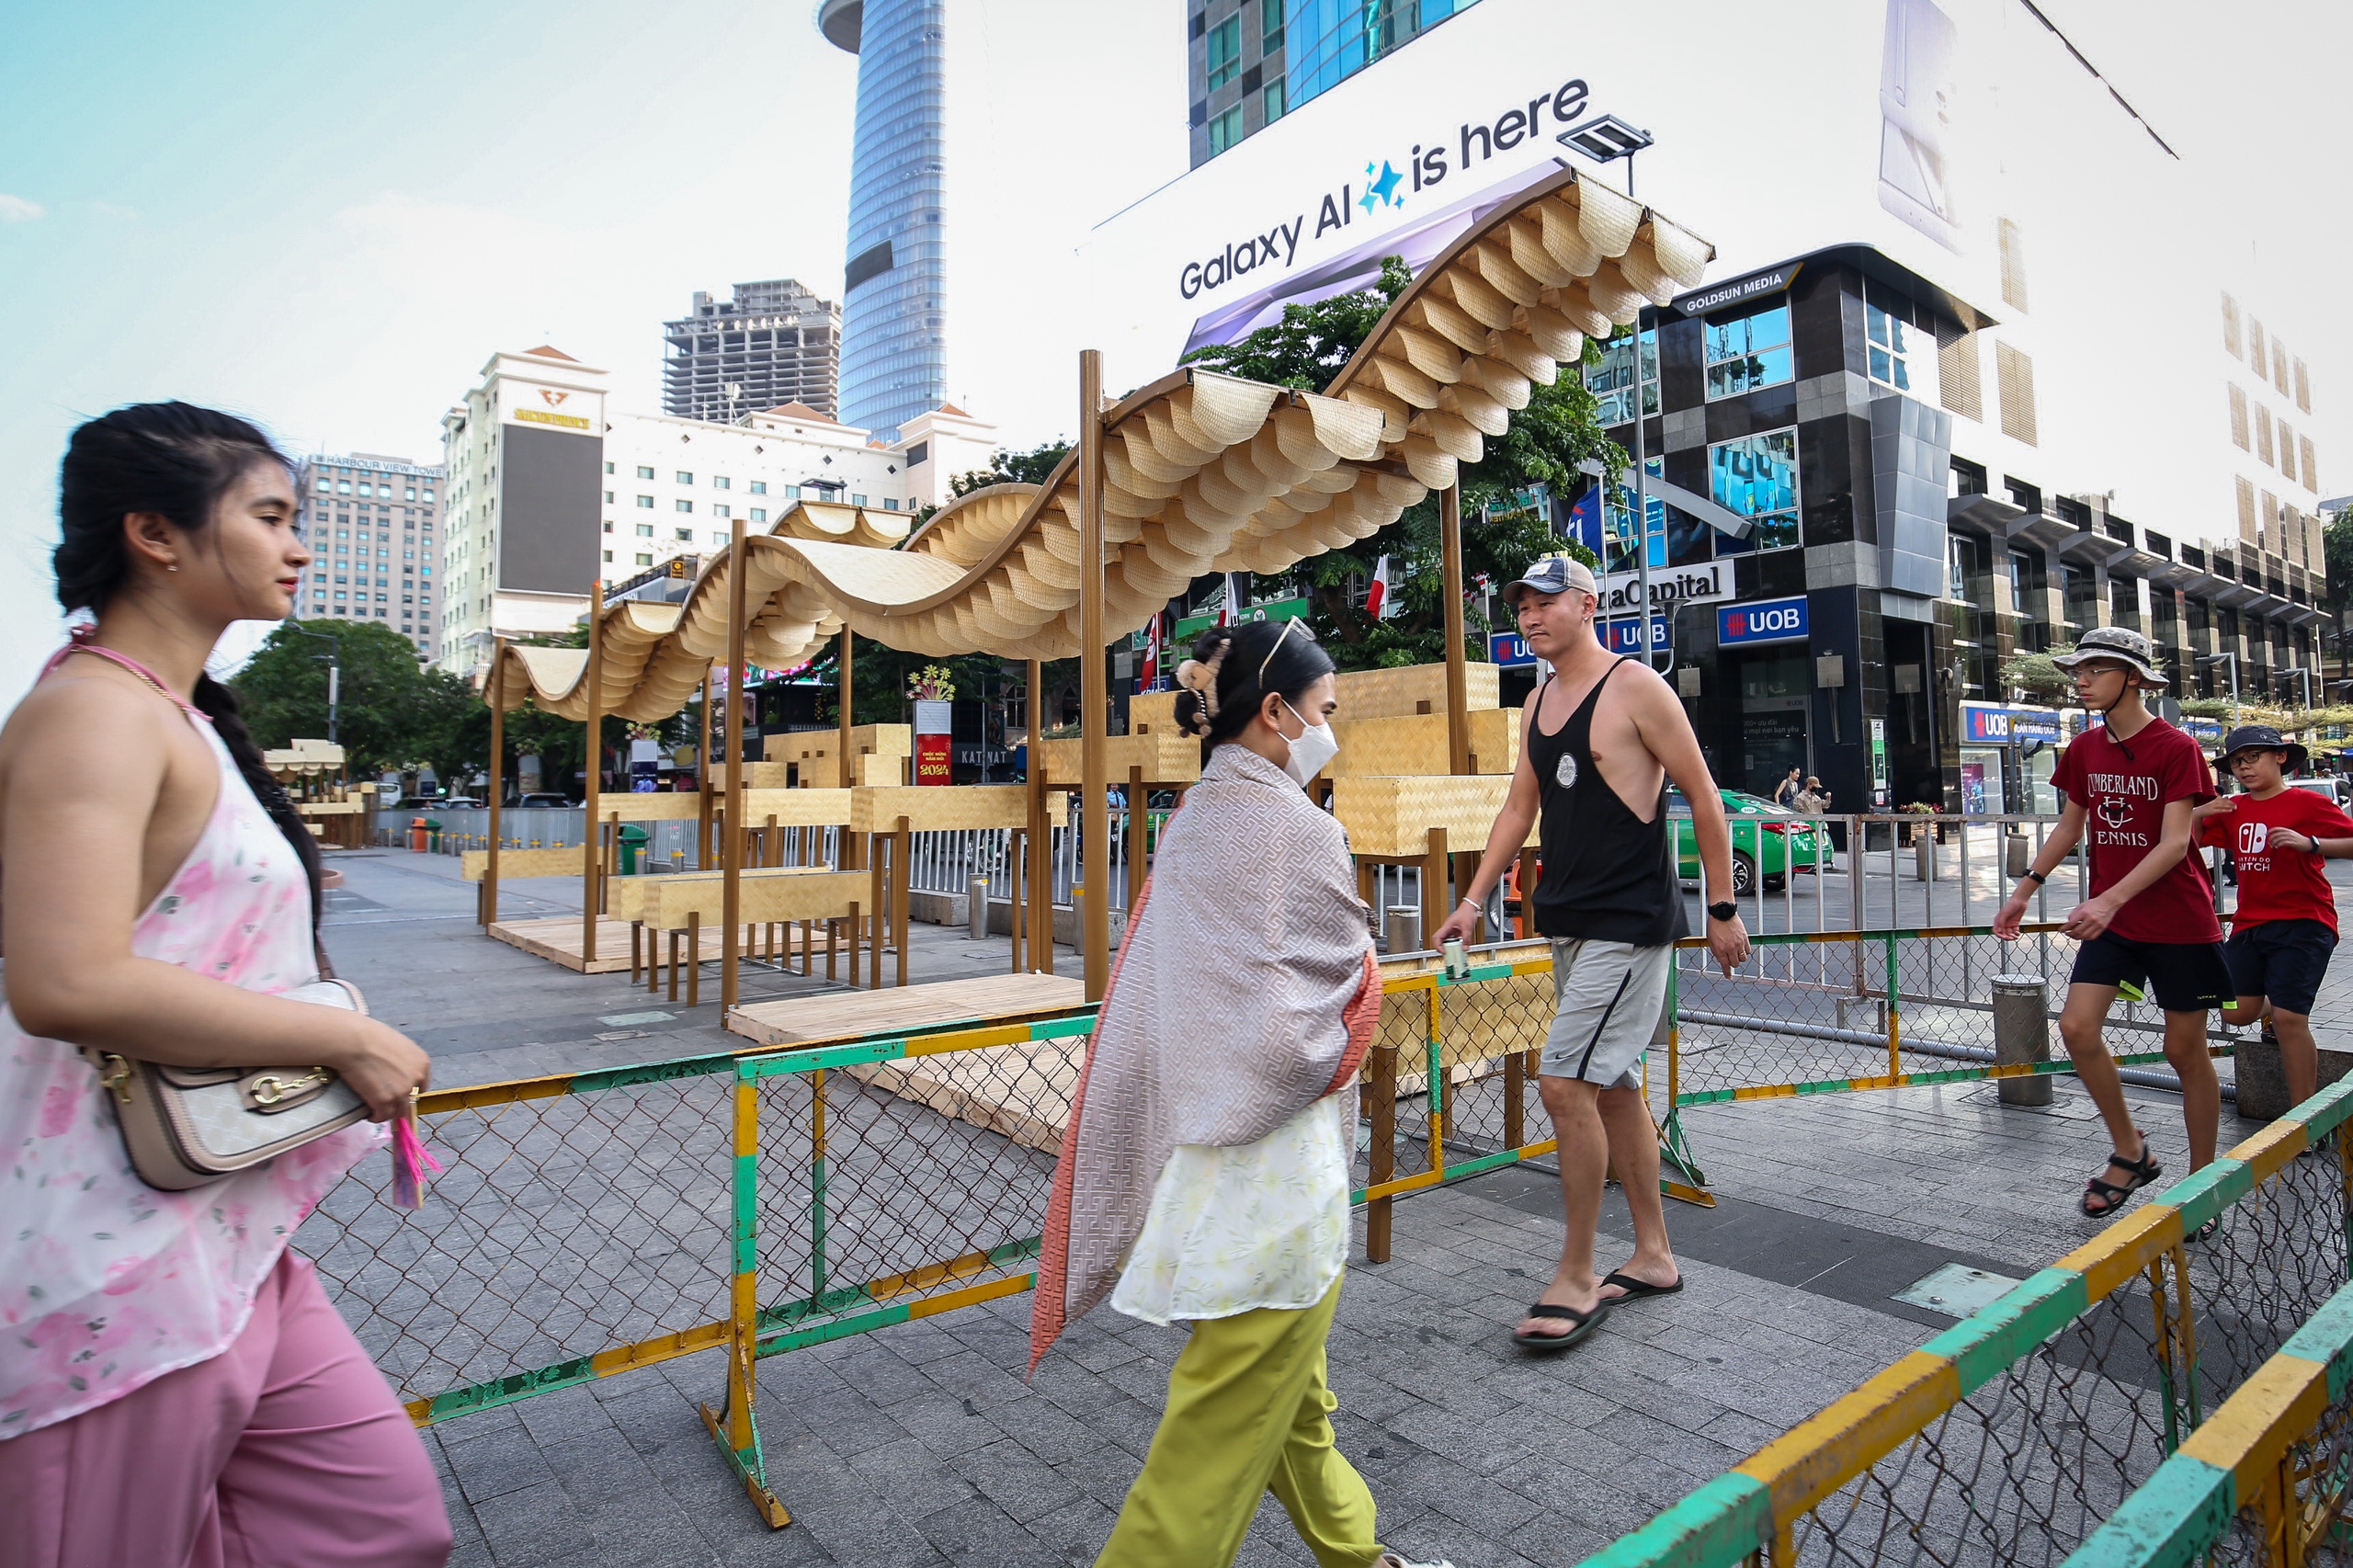 Du khách nước ngoài thích thú với hình ảnh linh vật rồng vừa xuất hiện tại phố đi bộ Nguyễn Huệ

